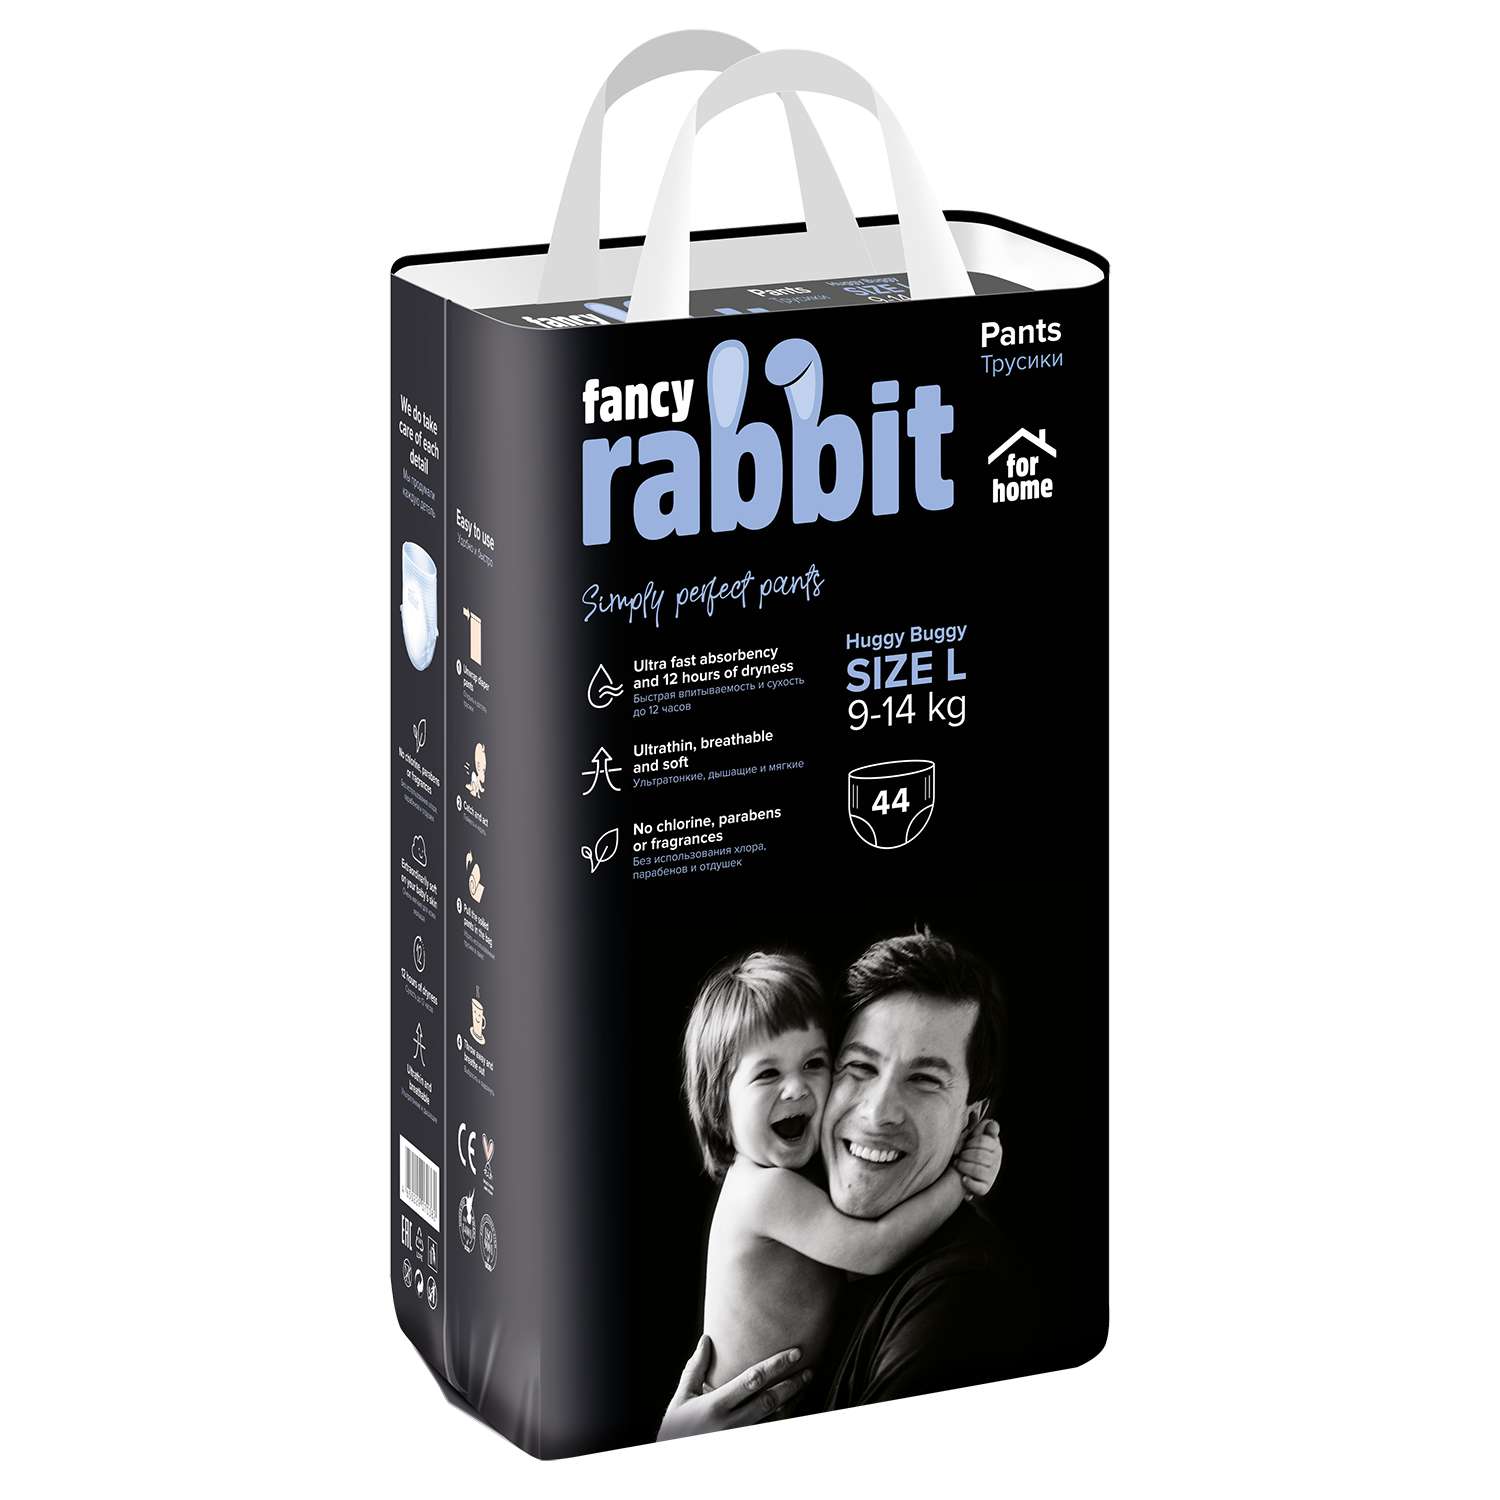 Трусики-подгузники Fancy Rabbit for home 9-14 кг L 44 шт - фото 1